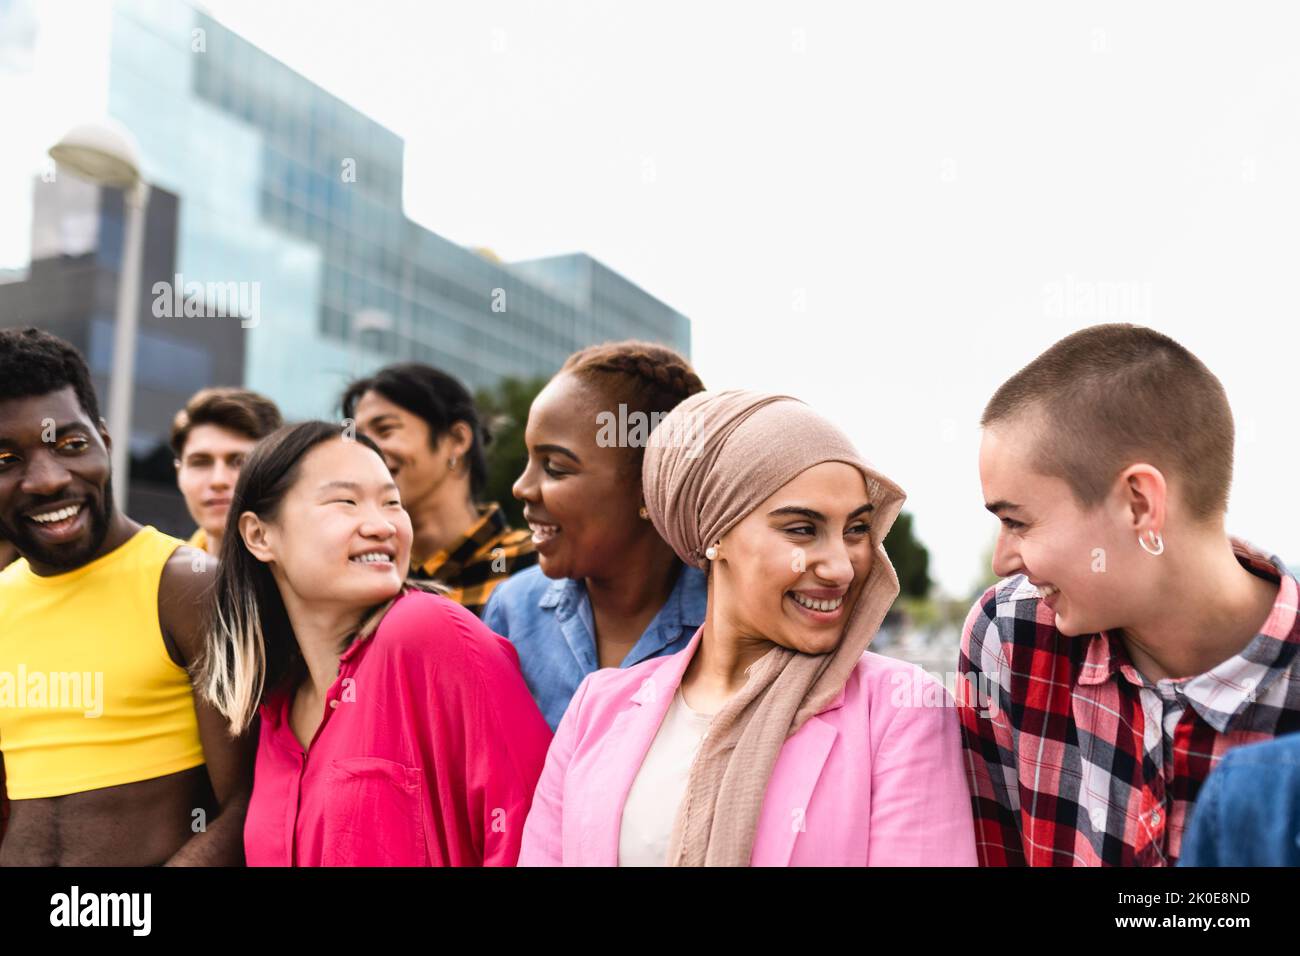 Junge multirassische Freunde haben Spaß zusammen in der Stadt hängen - Freundschaft und Vielfalt Konzept Stockfoto